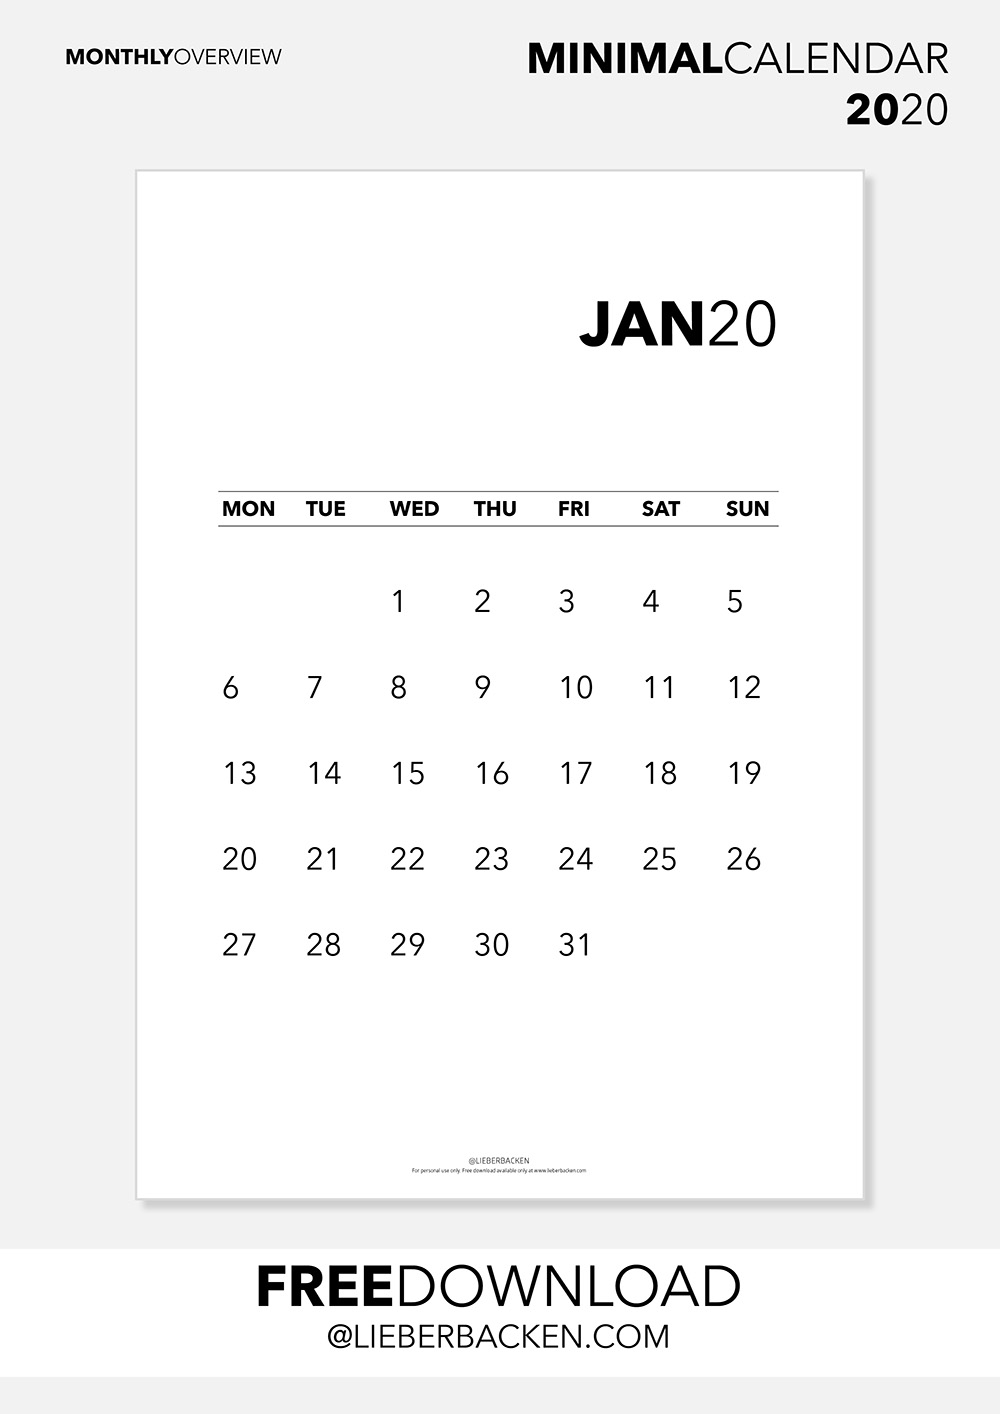 Monthly Calender - Free Printable Calender 2020 | Gratis Download Kalender 2020